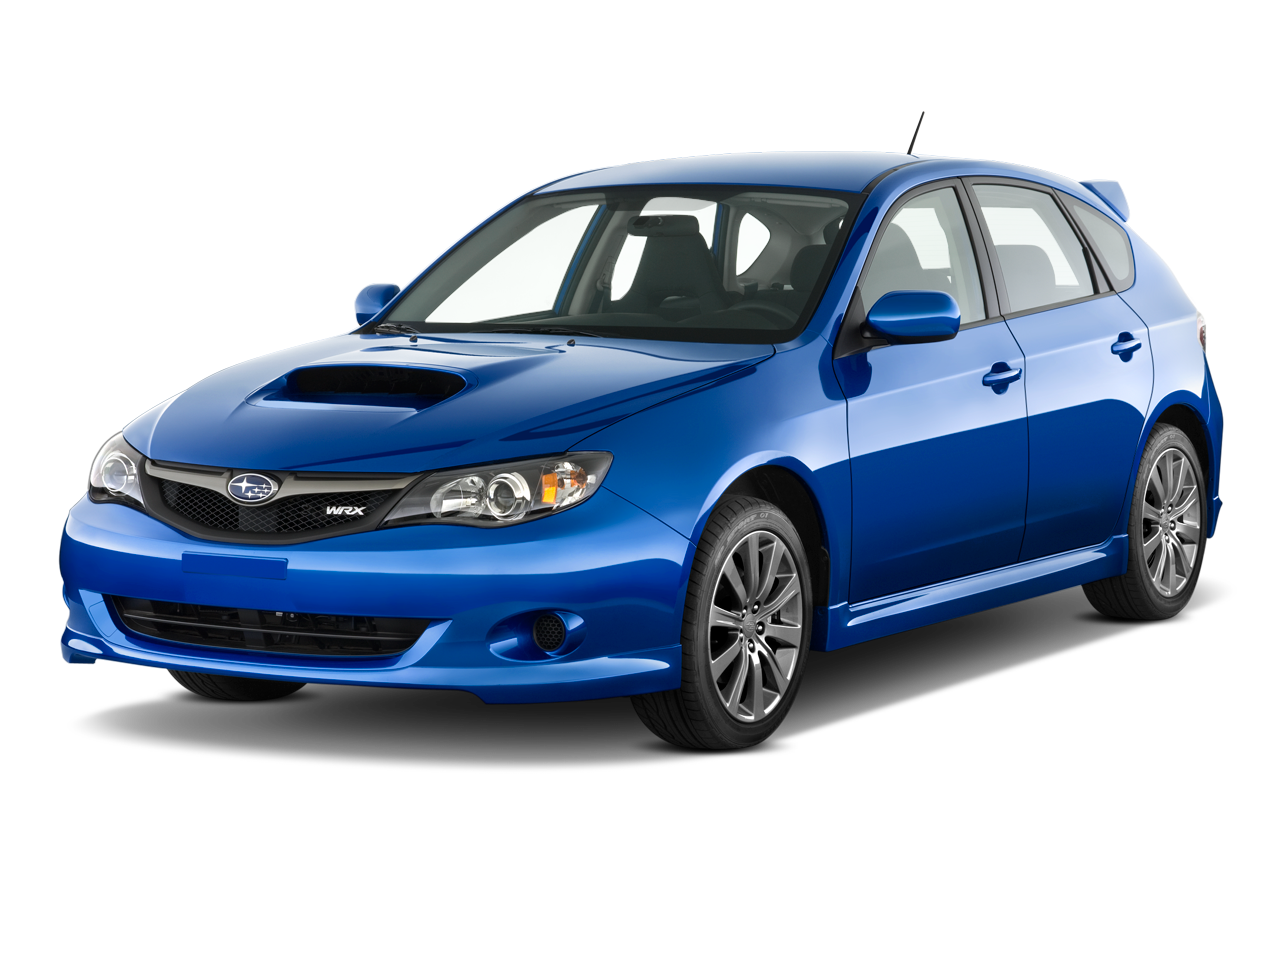 2009 Subaru Impreza Prices, Reviews, and Photos - MotorTrend